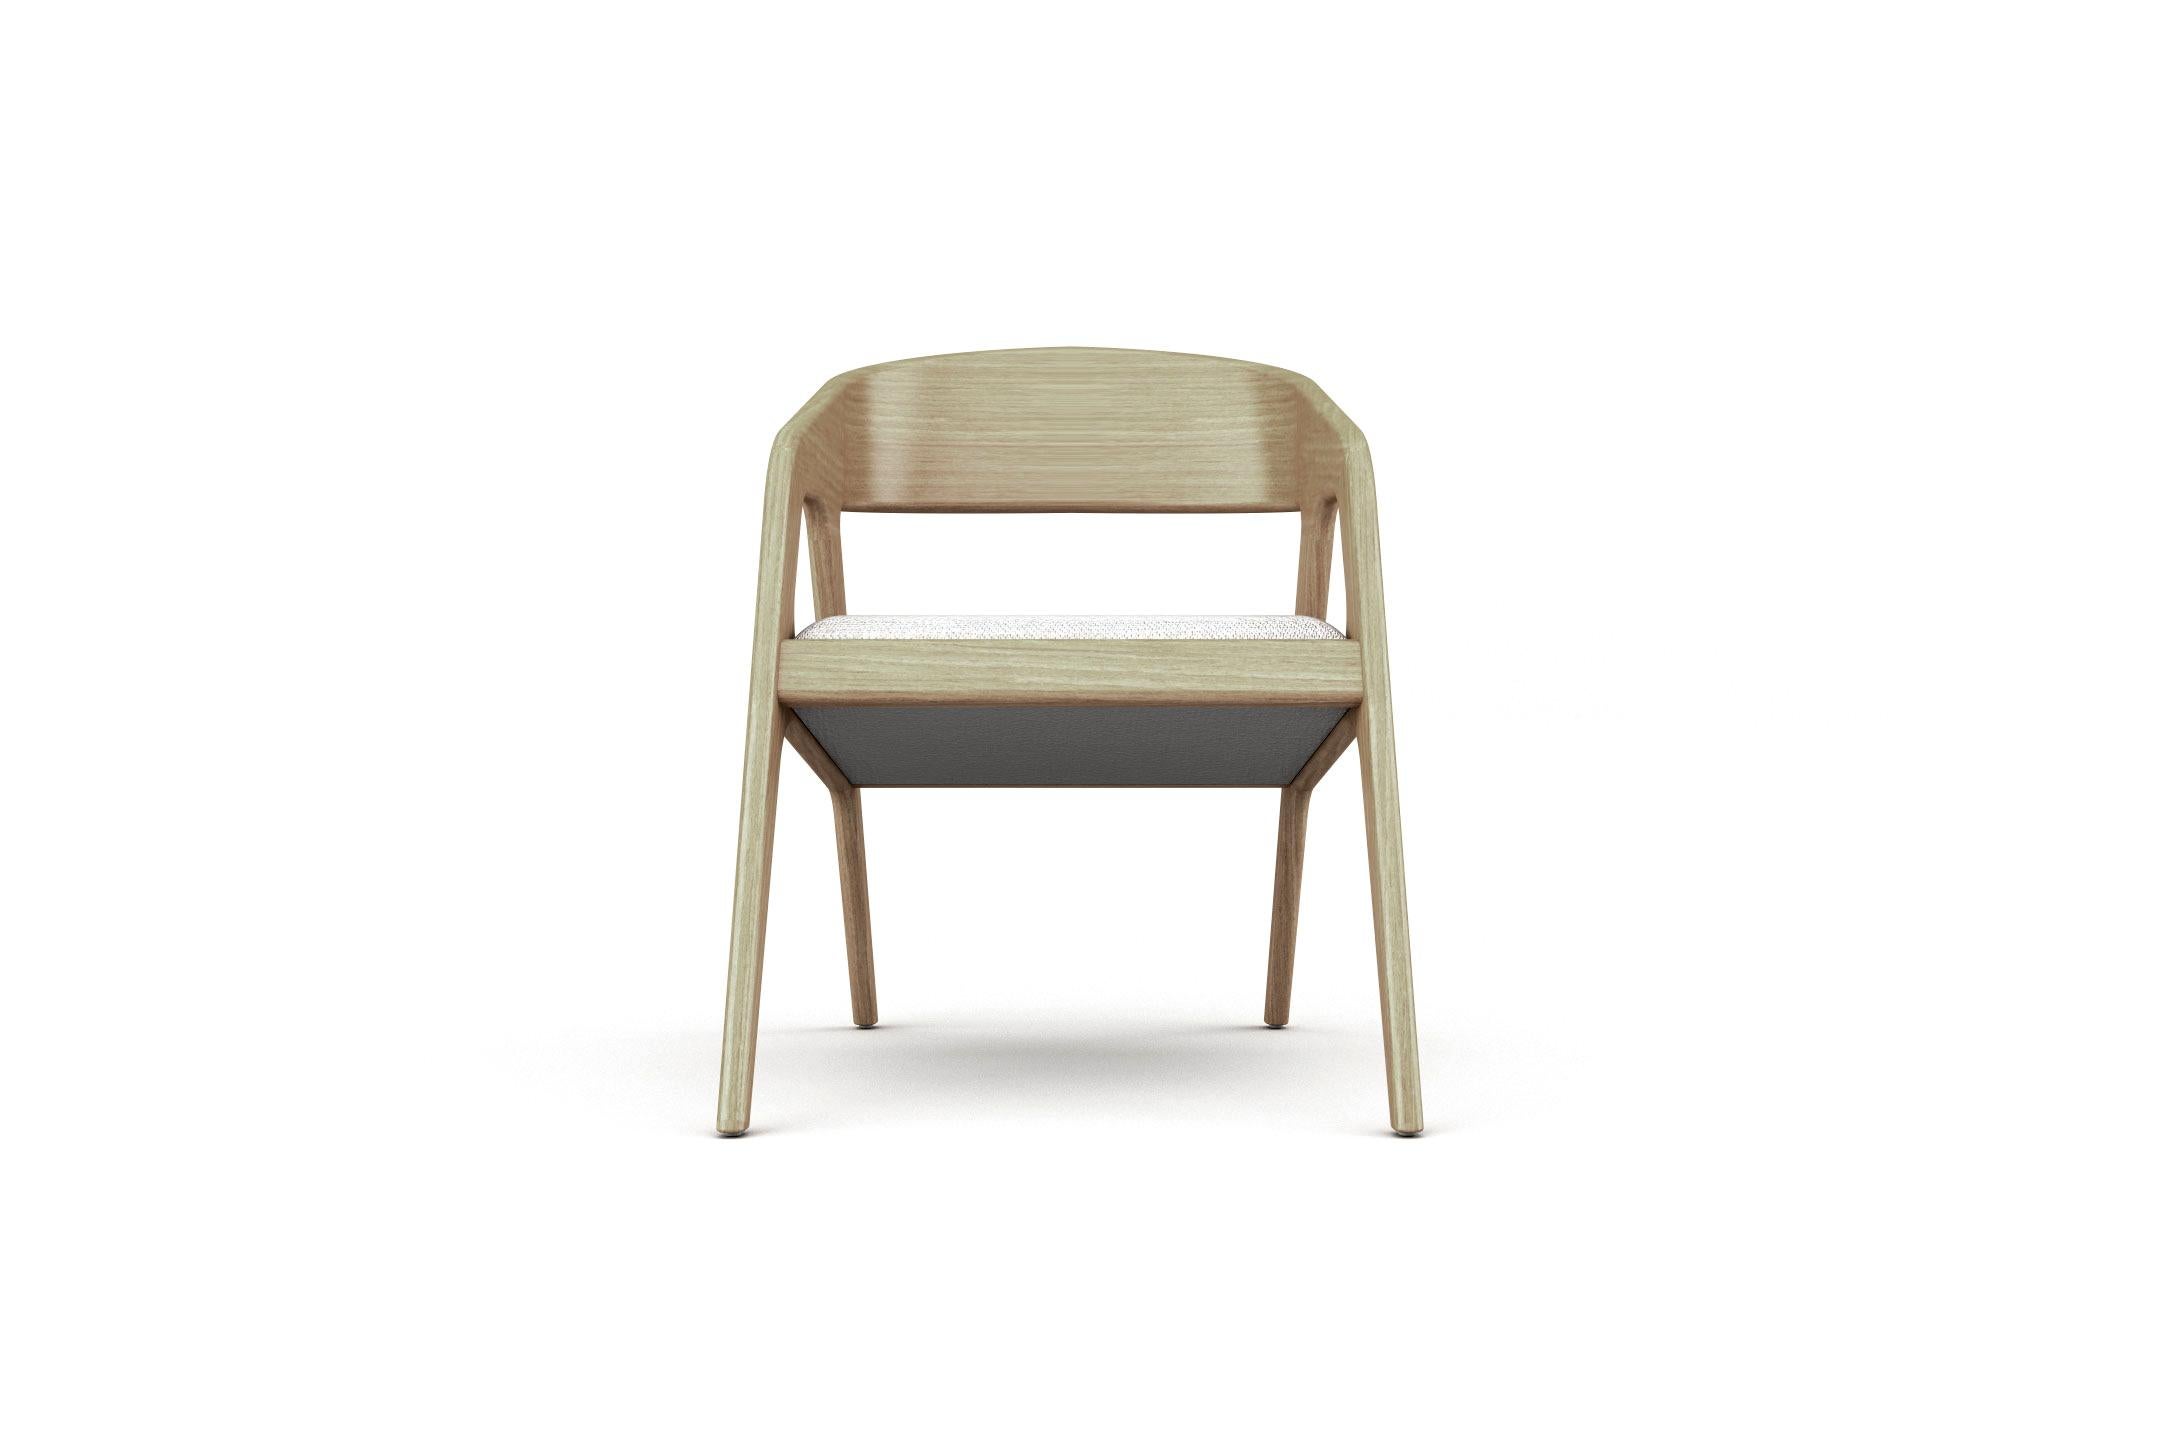 Européen 8 fauteuils Vertex, fauteuil moderne et minimaliste en chêne avec assise tapissée en vente